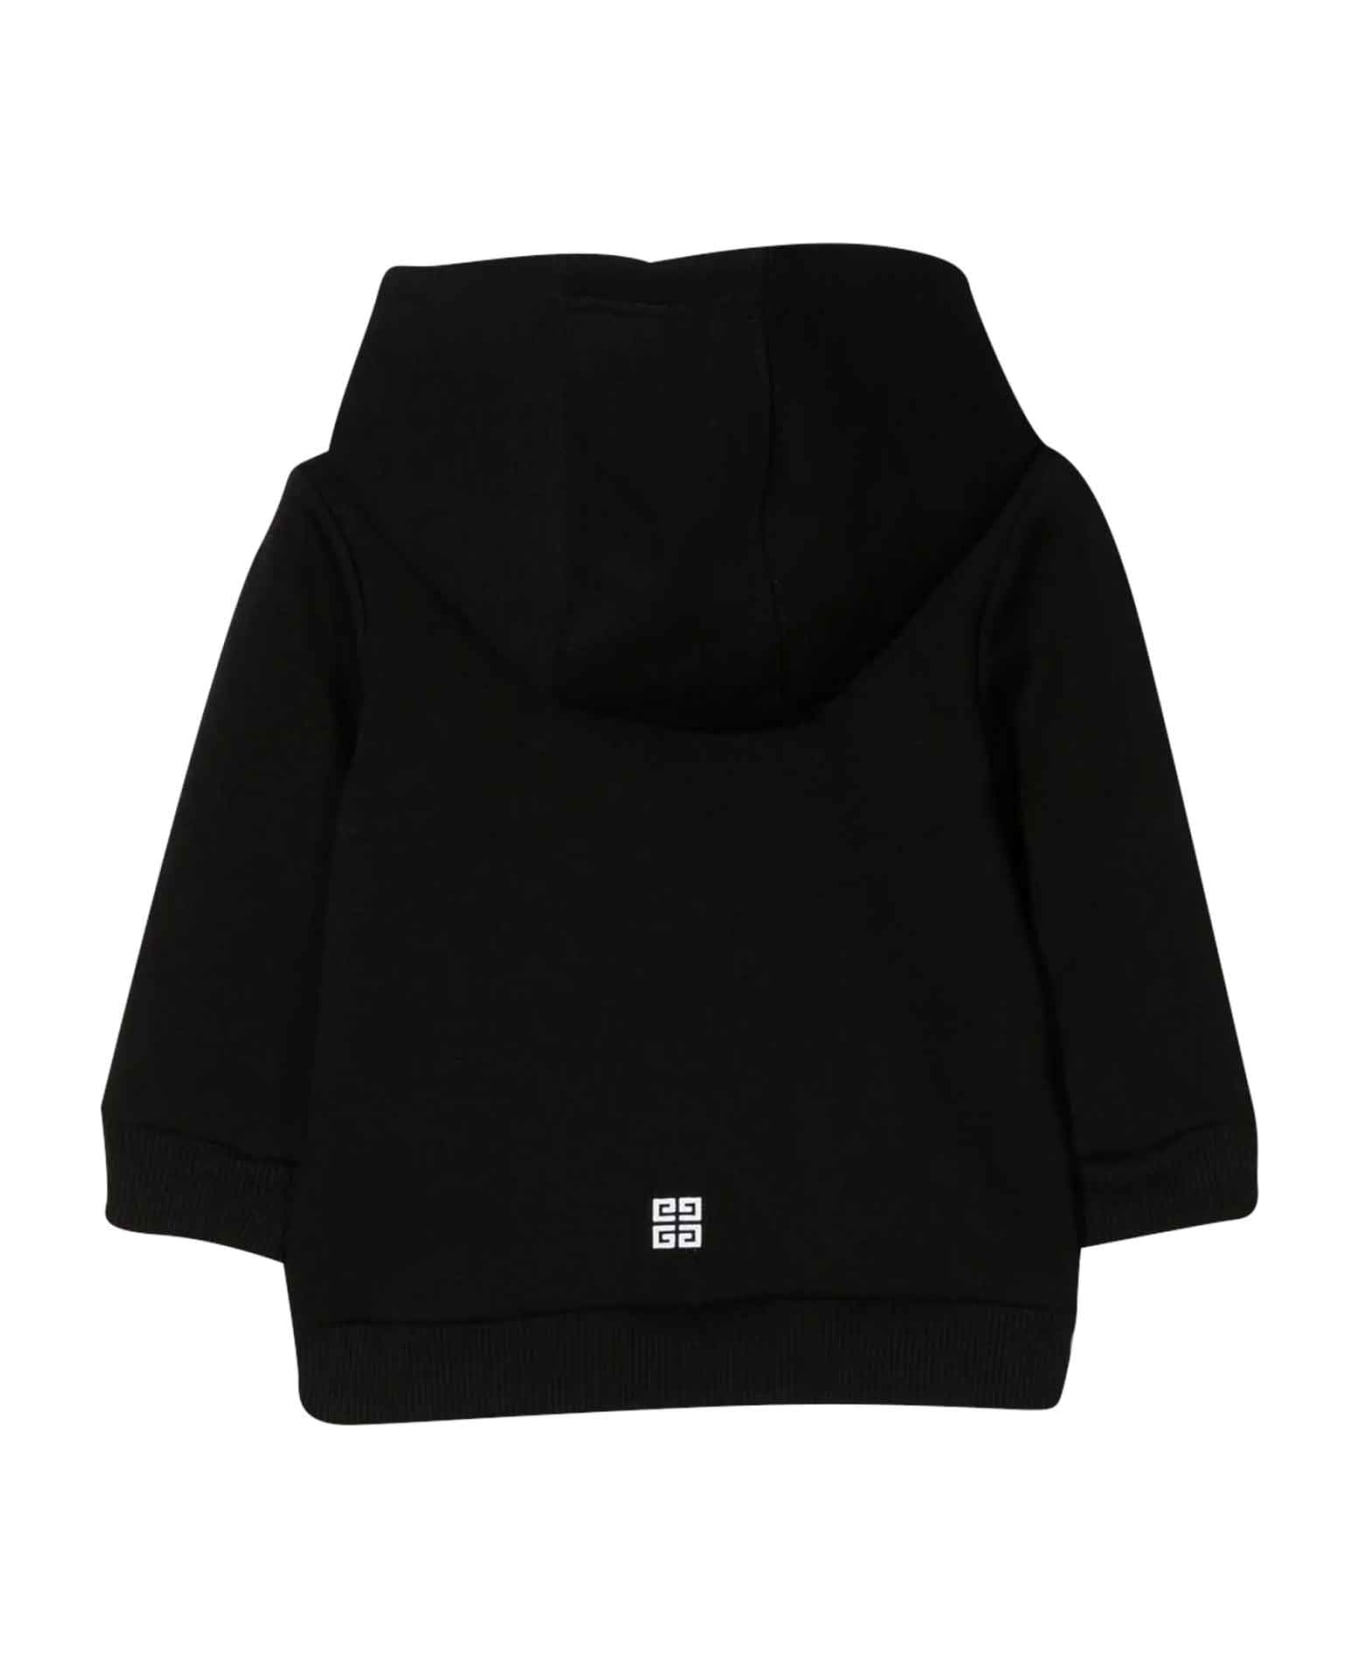 Givenchy Black Sweatshirt Baby Unisex - Nero